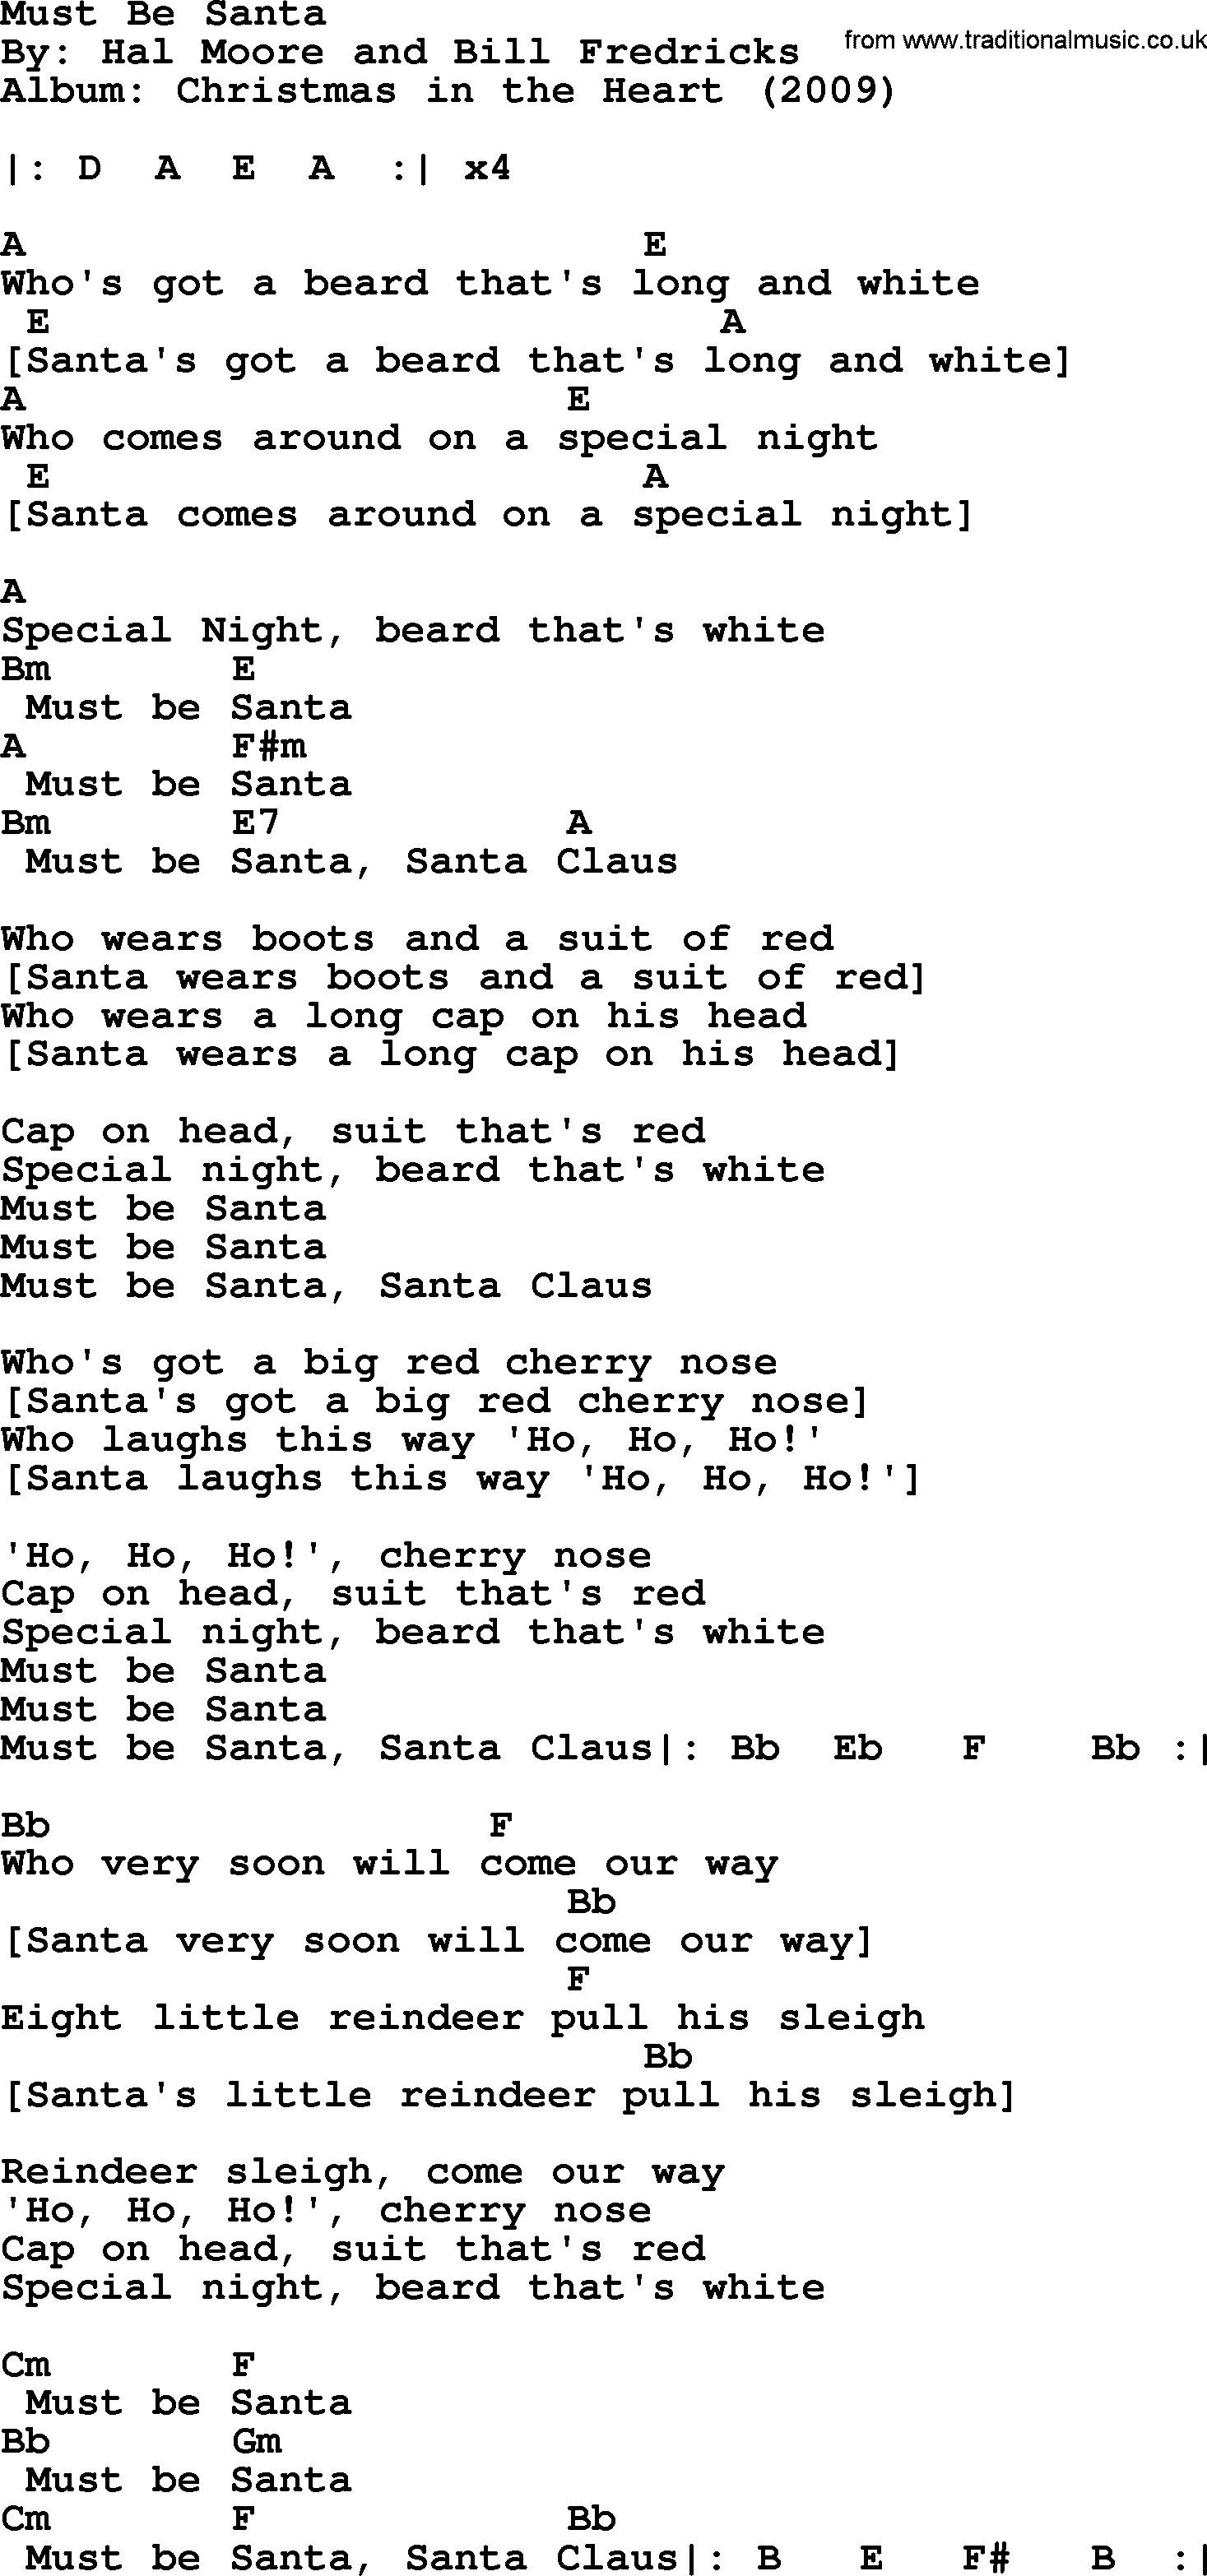 Bob Dylan song - Must Be Santa, lyrics and chords